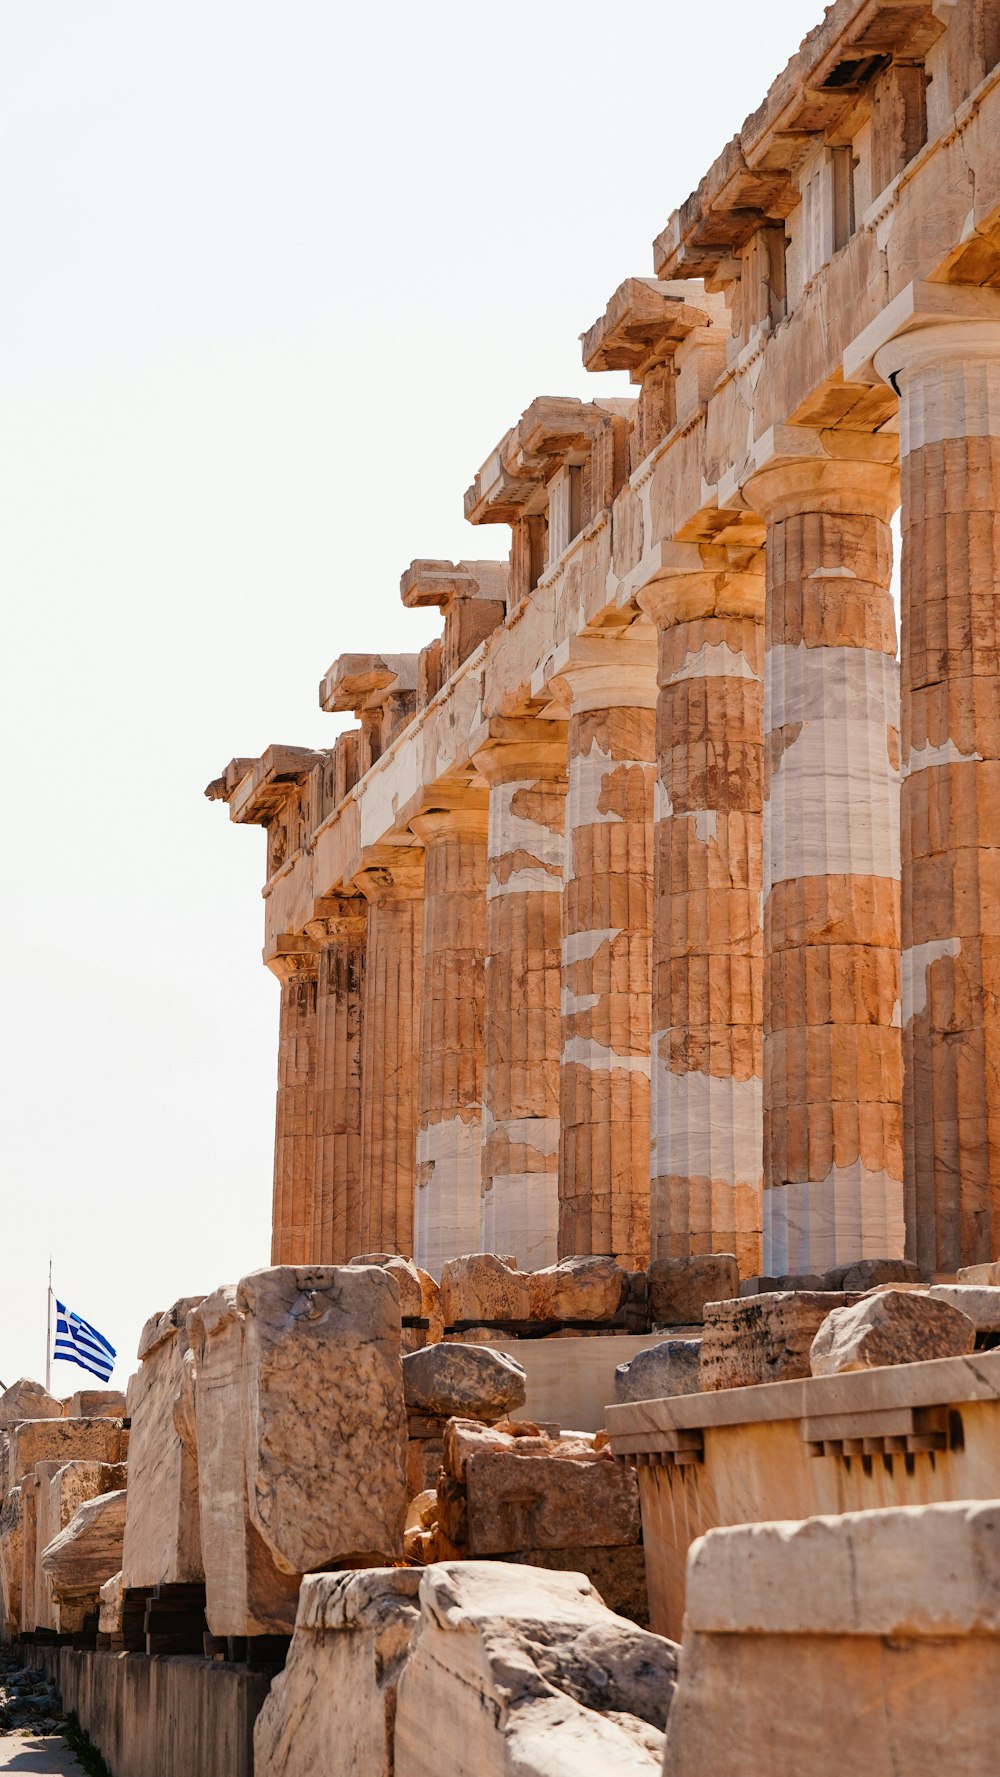 배경에 깃발이 휘날리는 고대 그리스 유적이 줄지어 있습니다